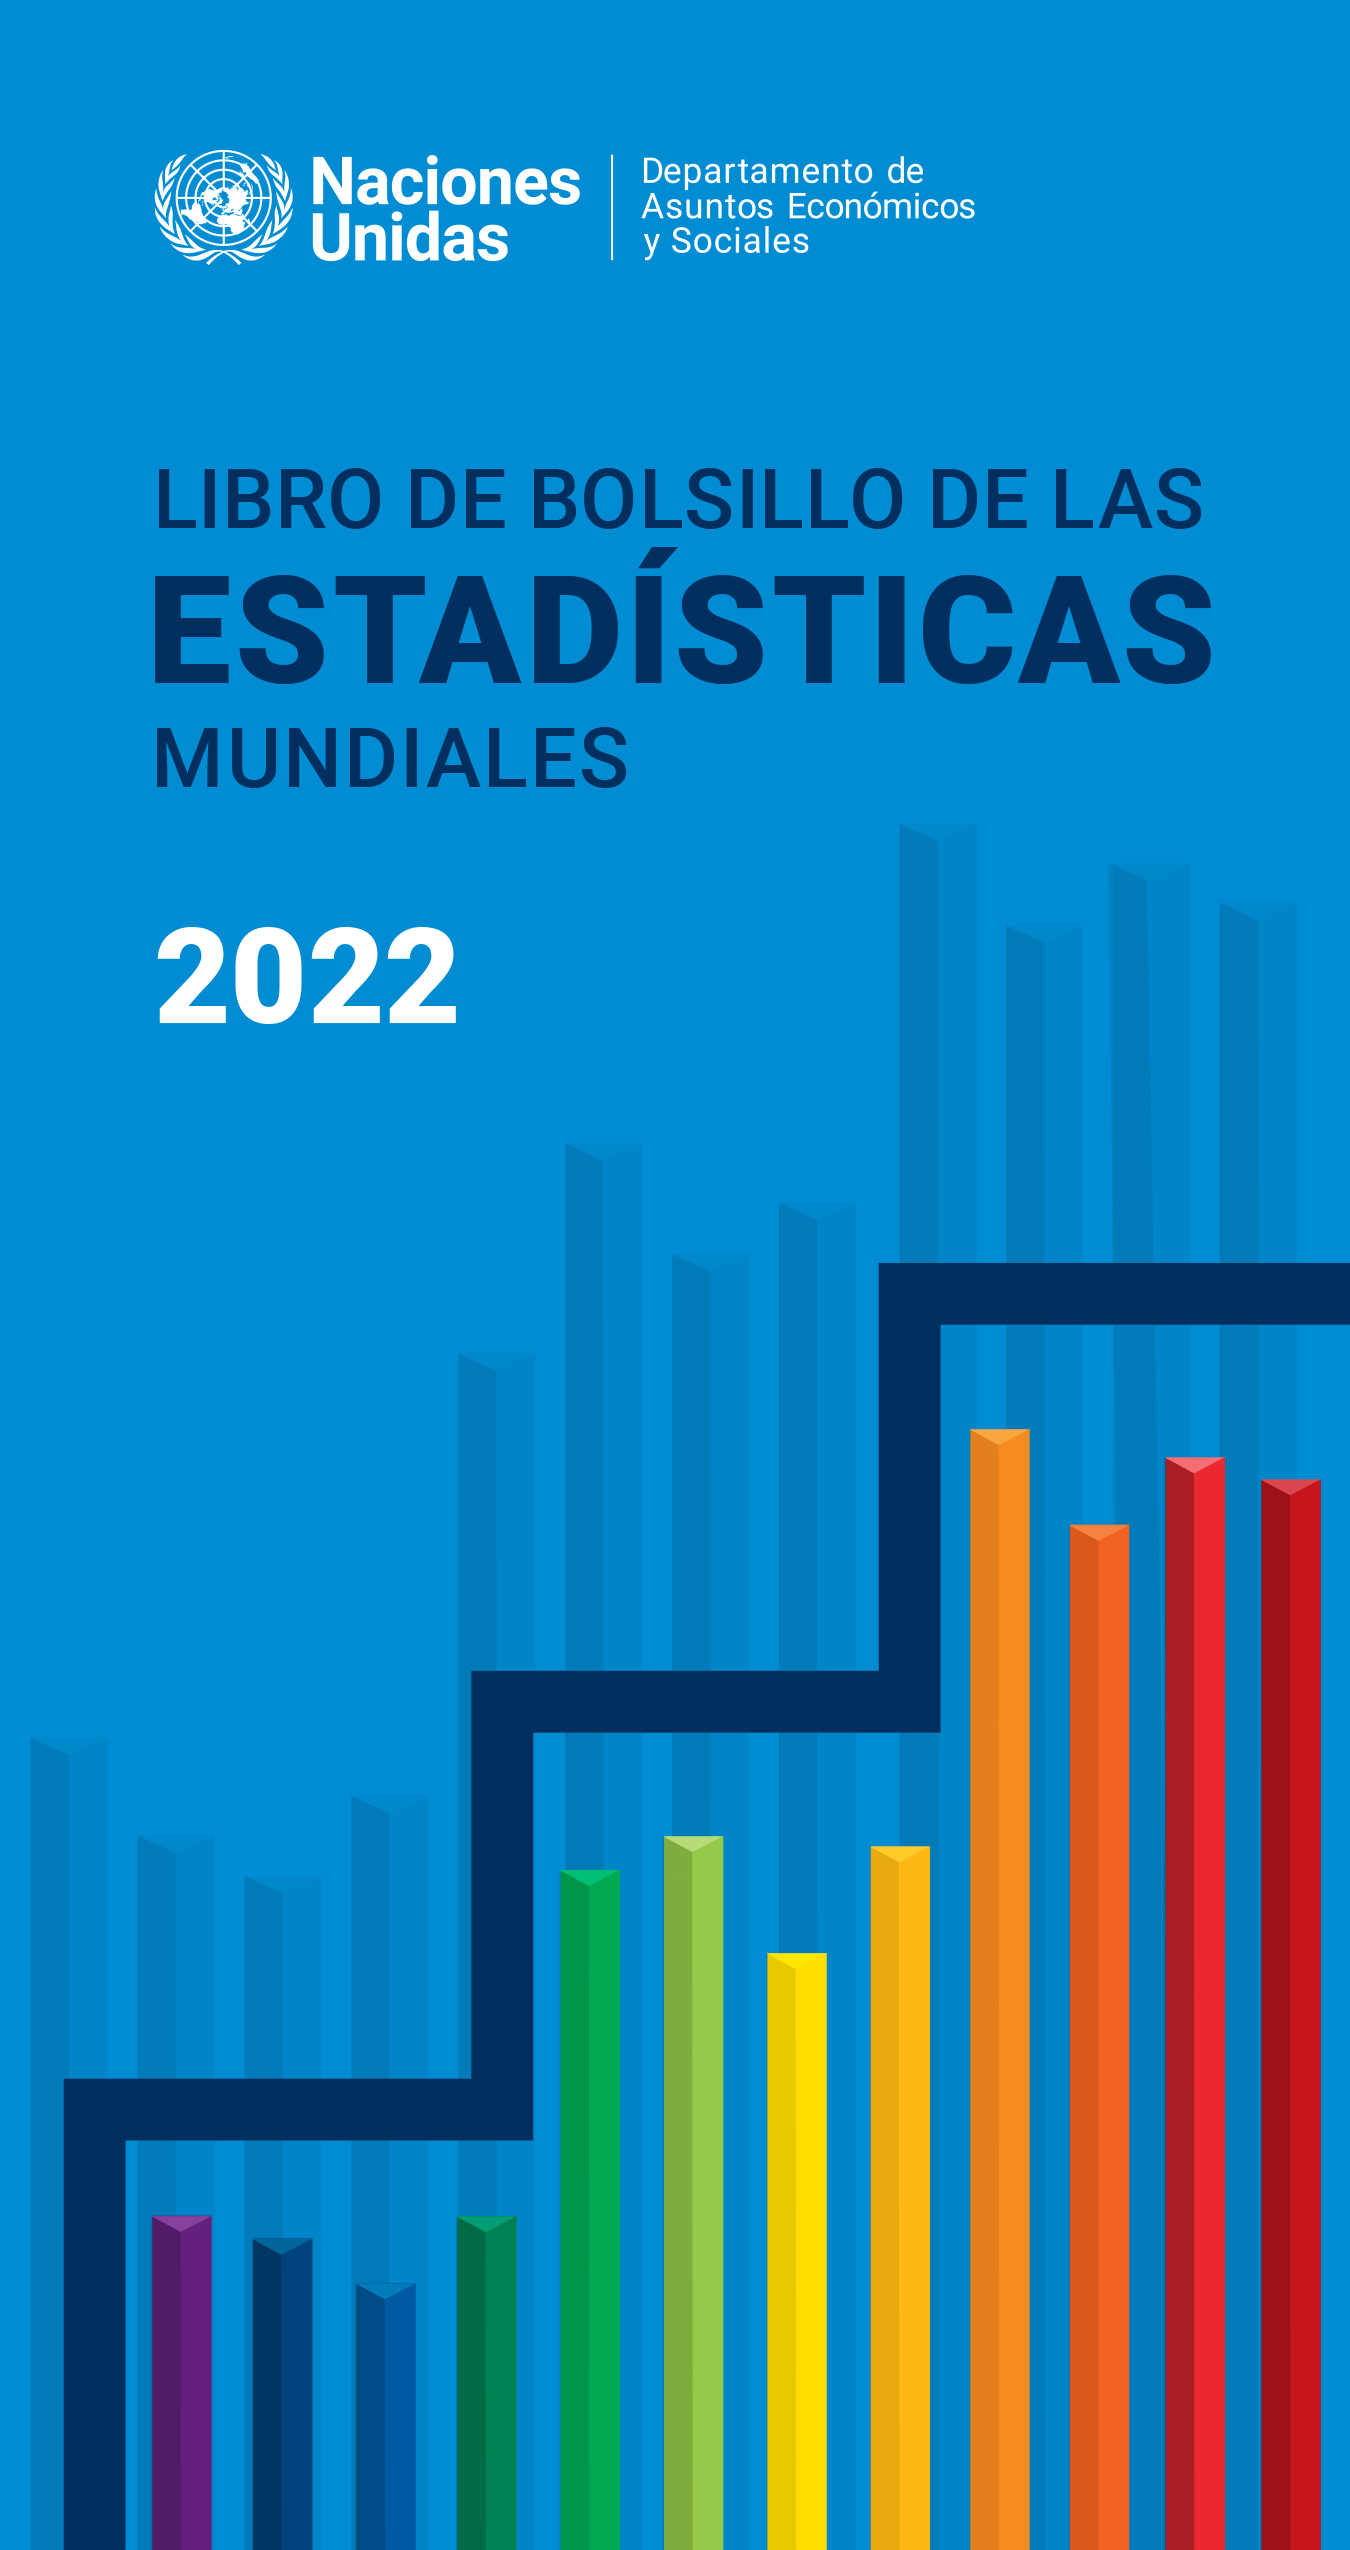 image of Libro de bolsillo de las estadisticas mundiales 2022